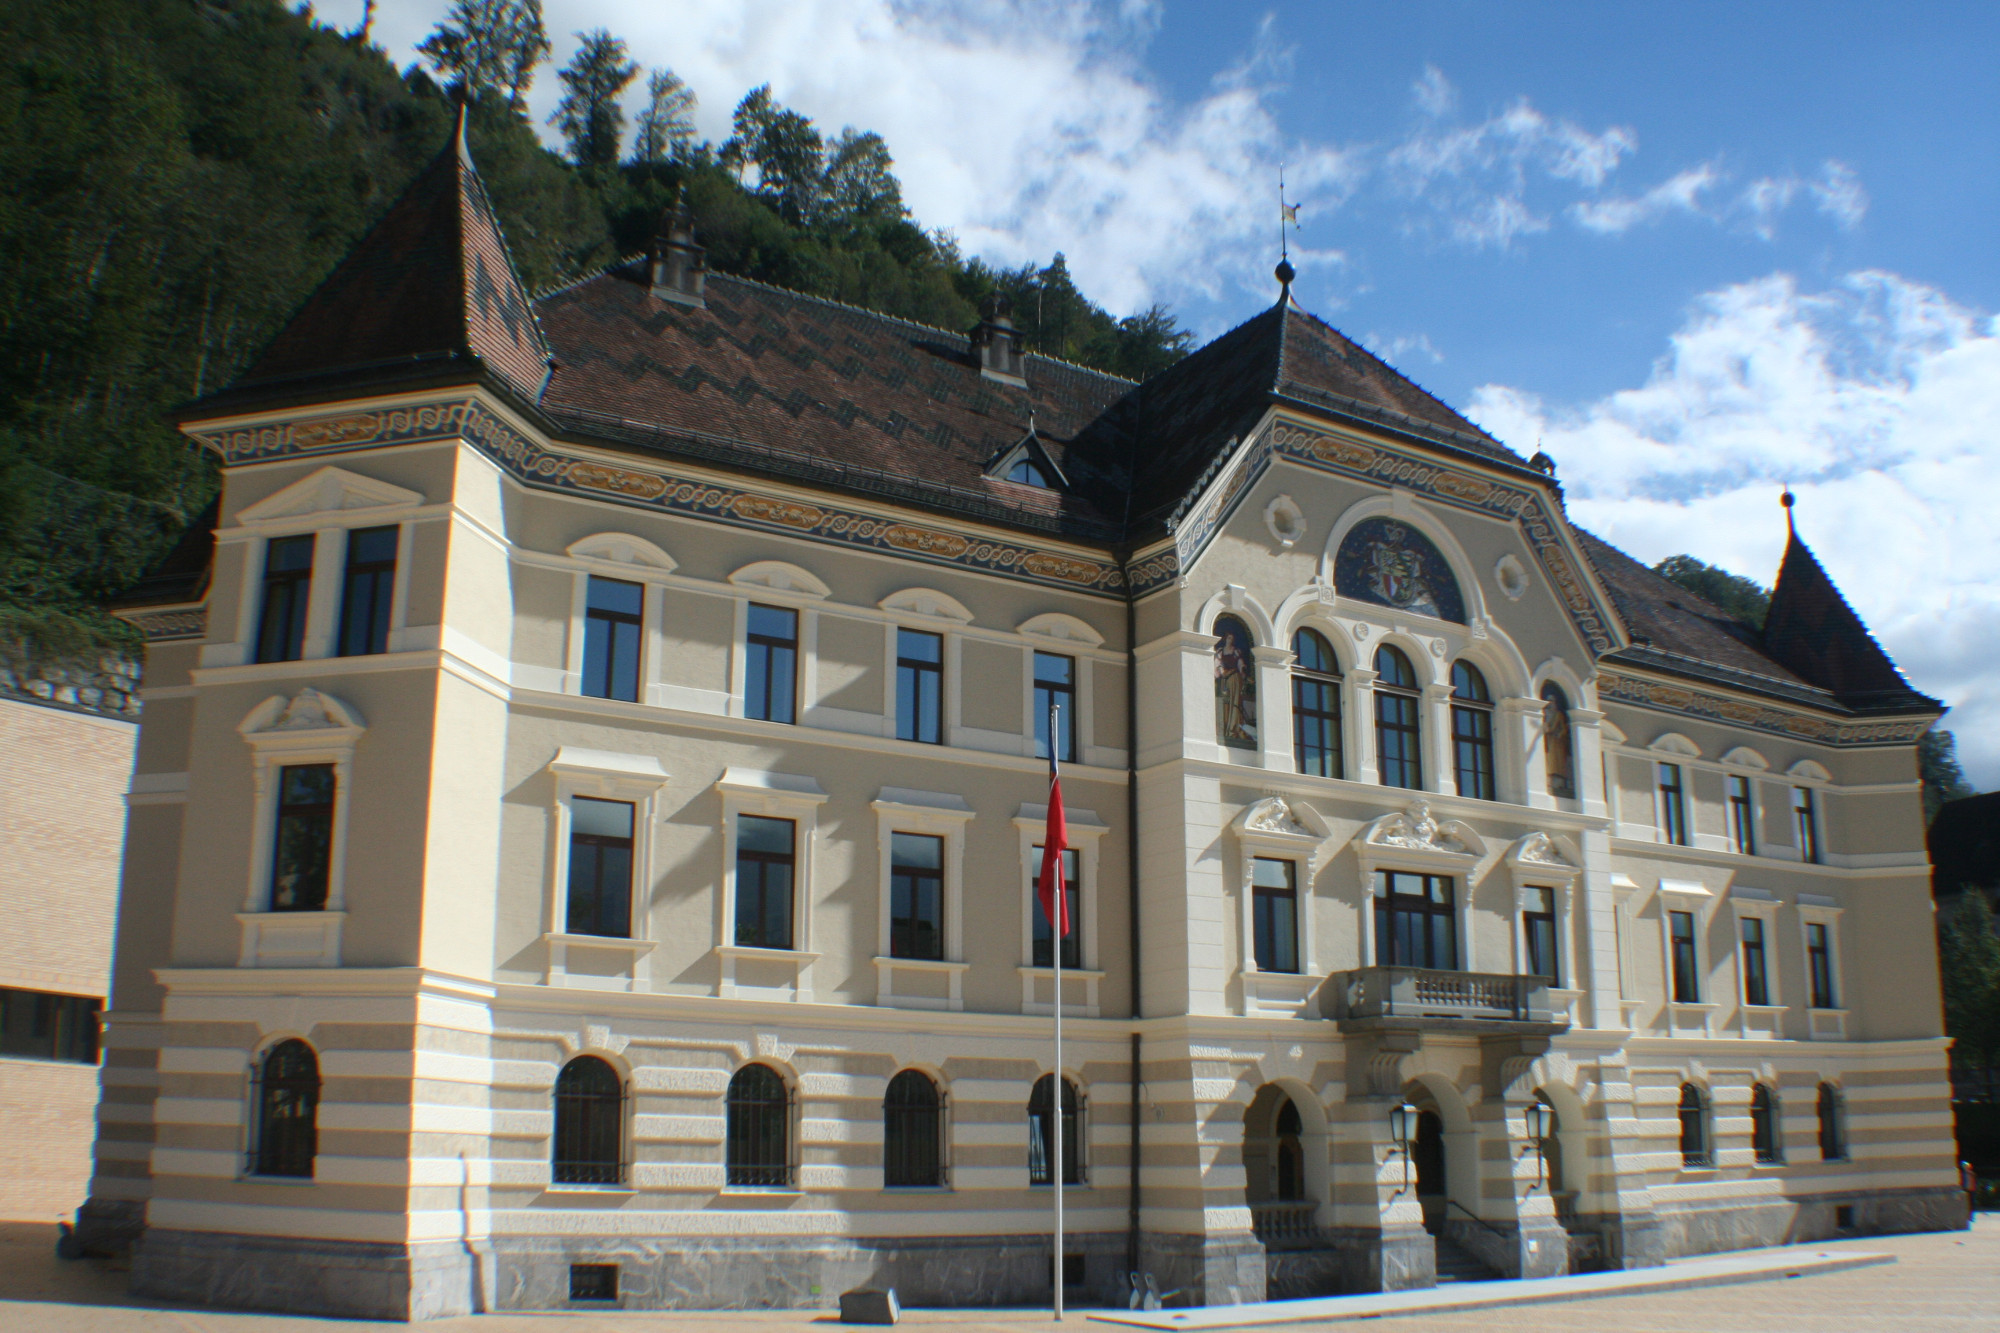 Regierungsgebäude des Fürstentums <br/>
Govt House